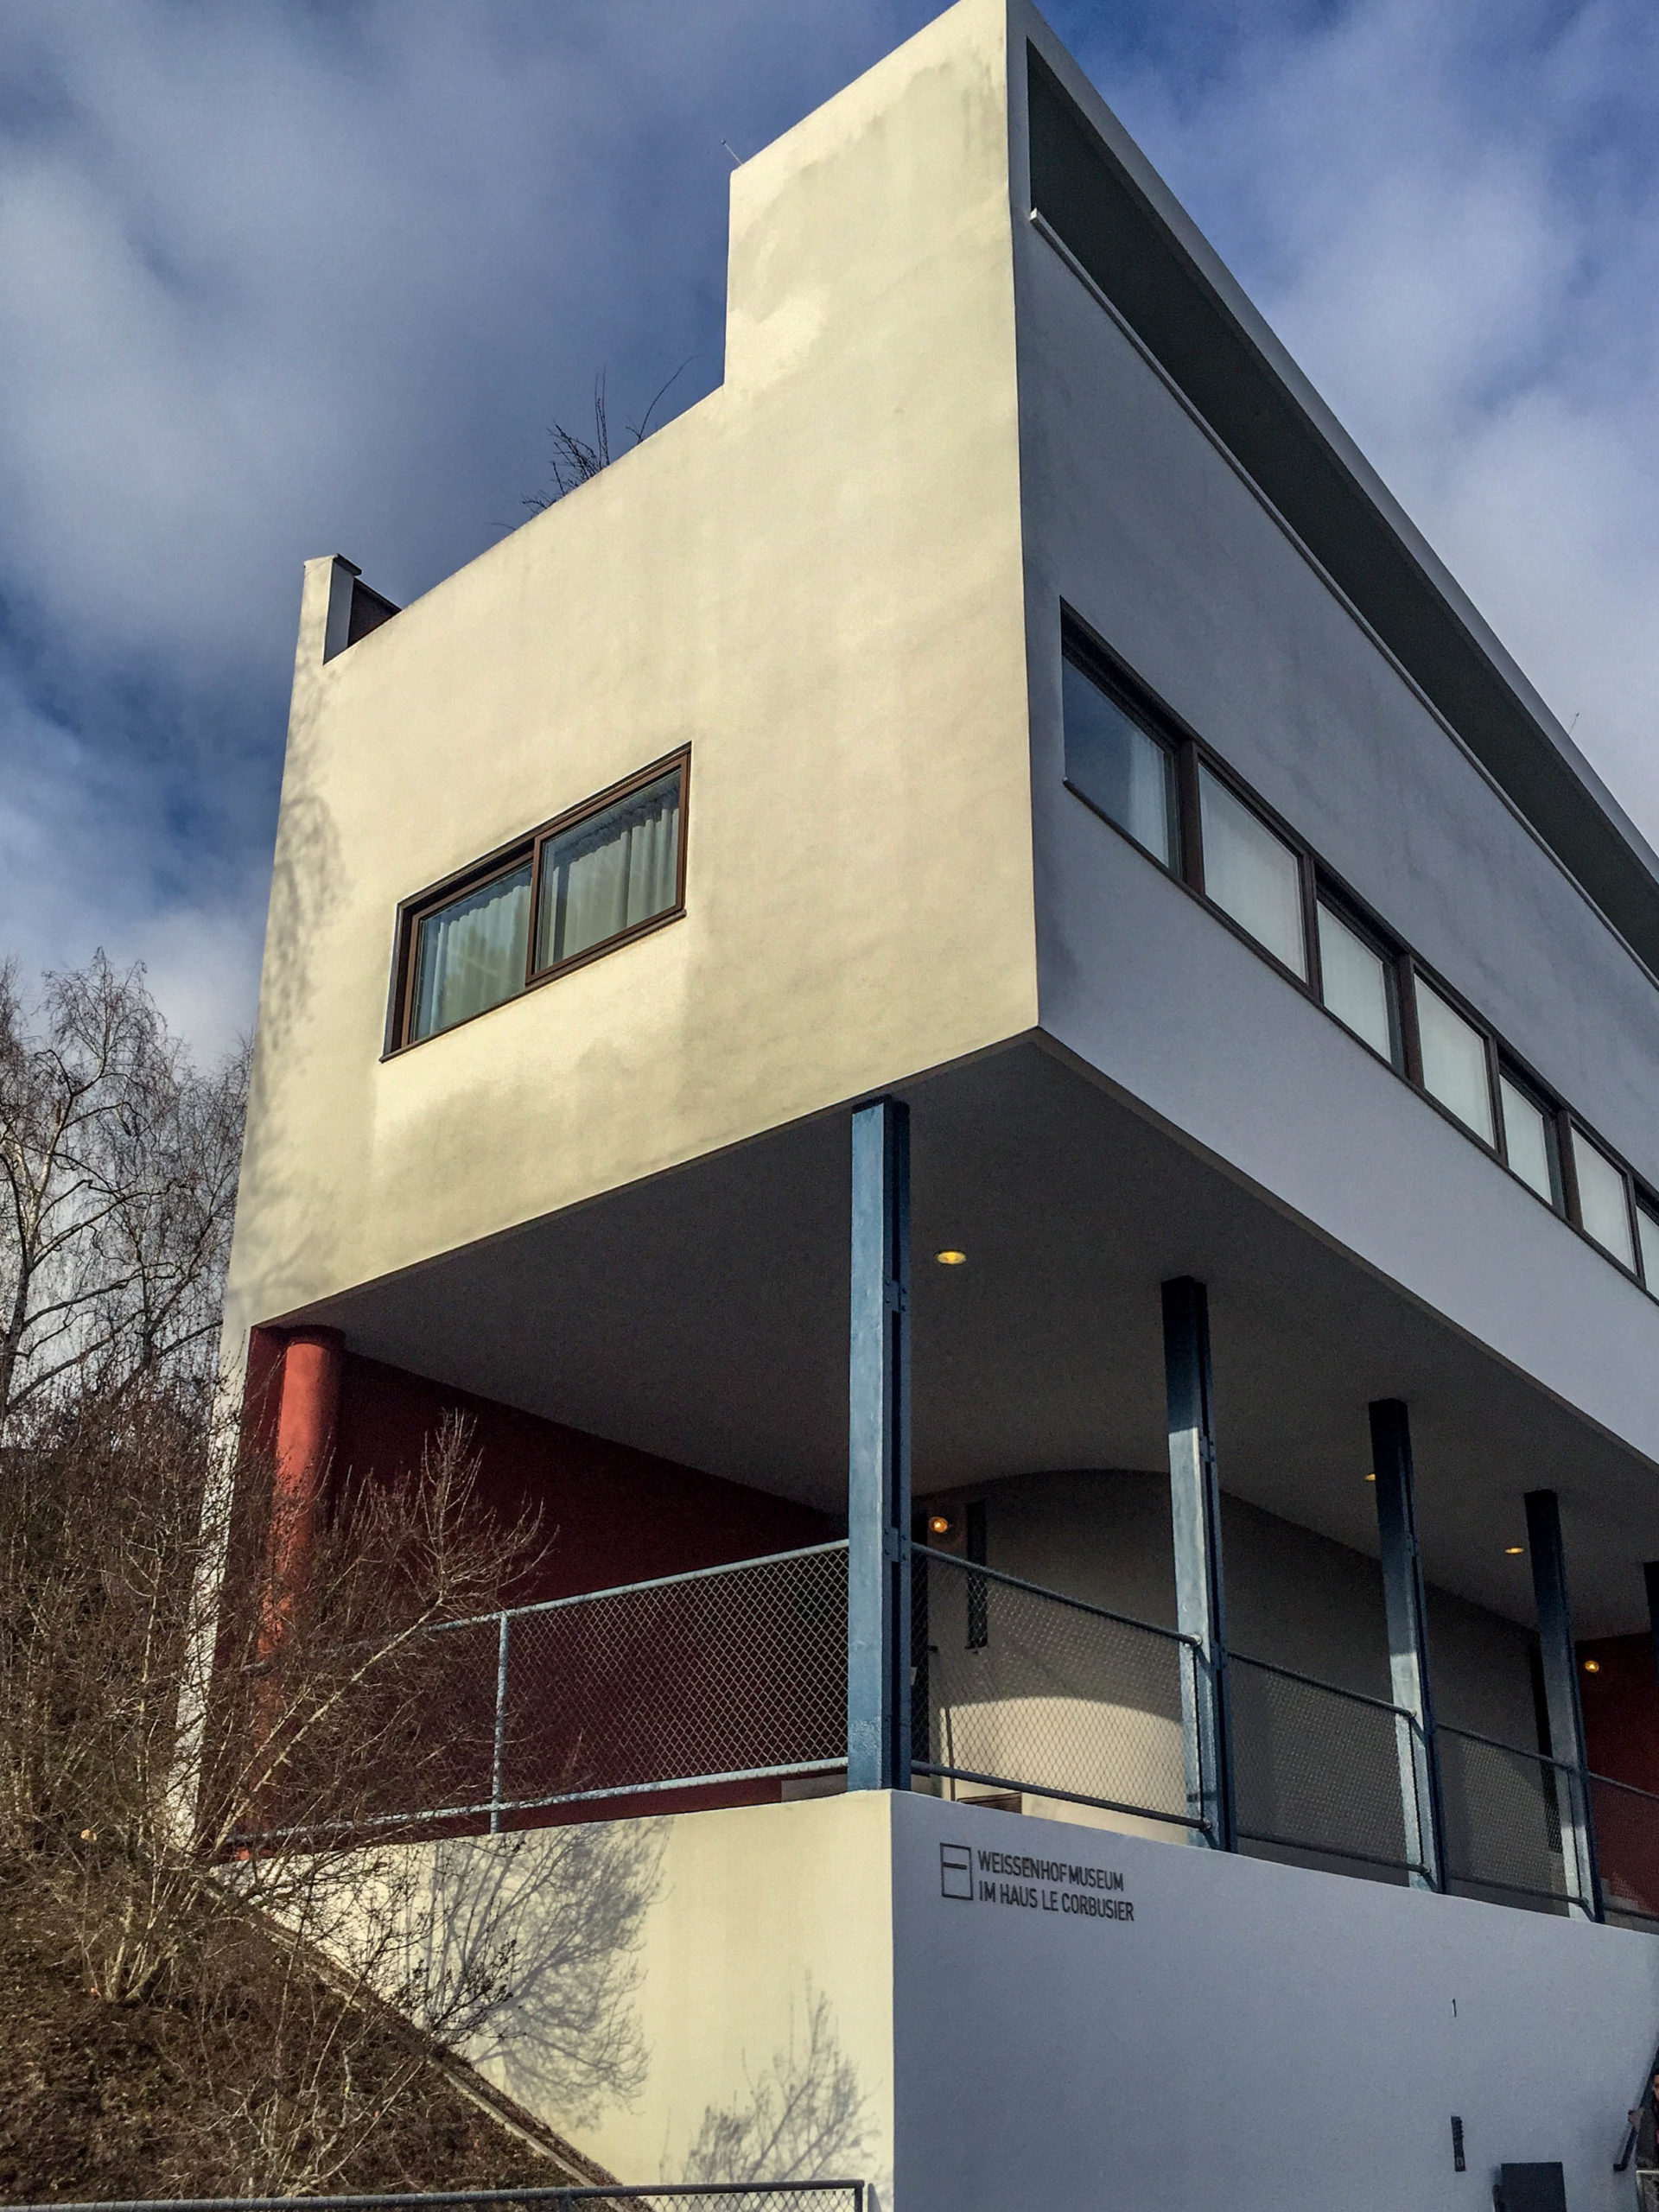 Doppelhaus, 1927. Architekten: Le Corbusier, Pierre Jeanneret. Foto: Daniela Christmann